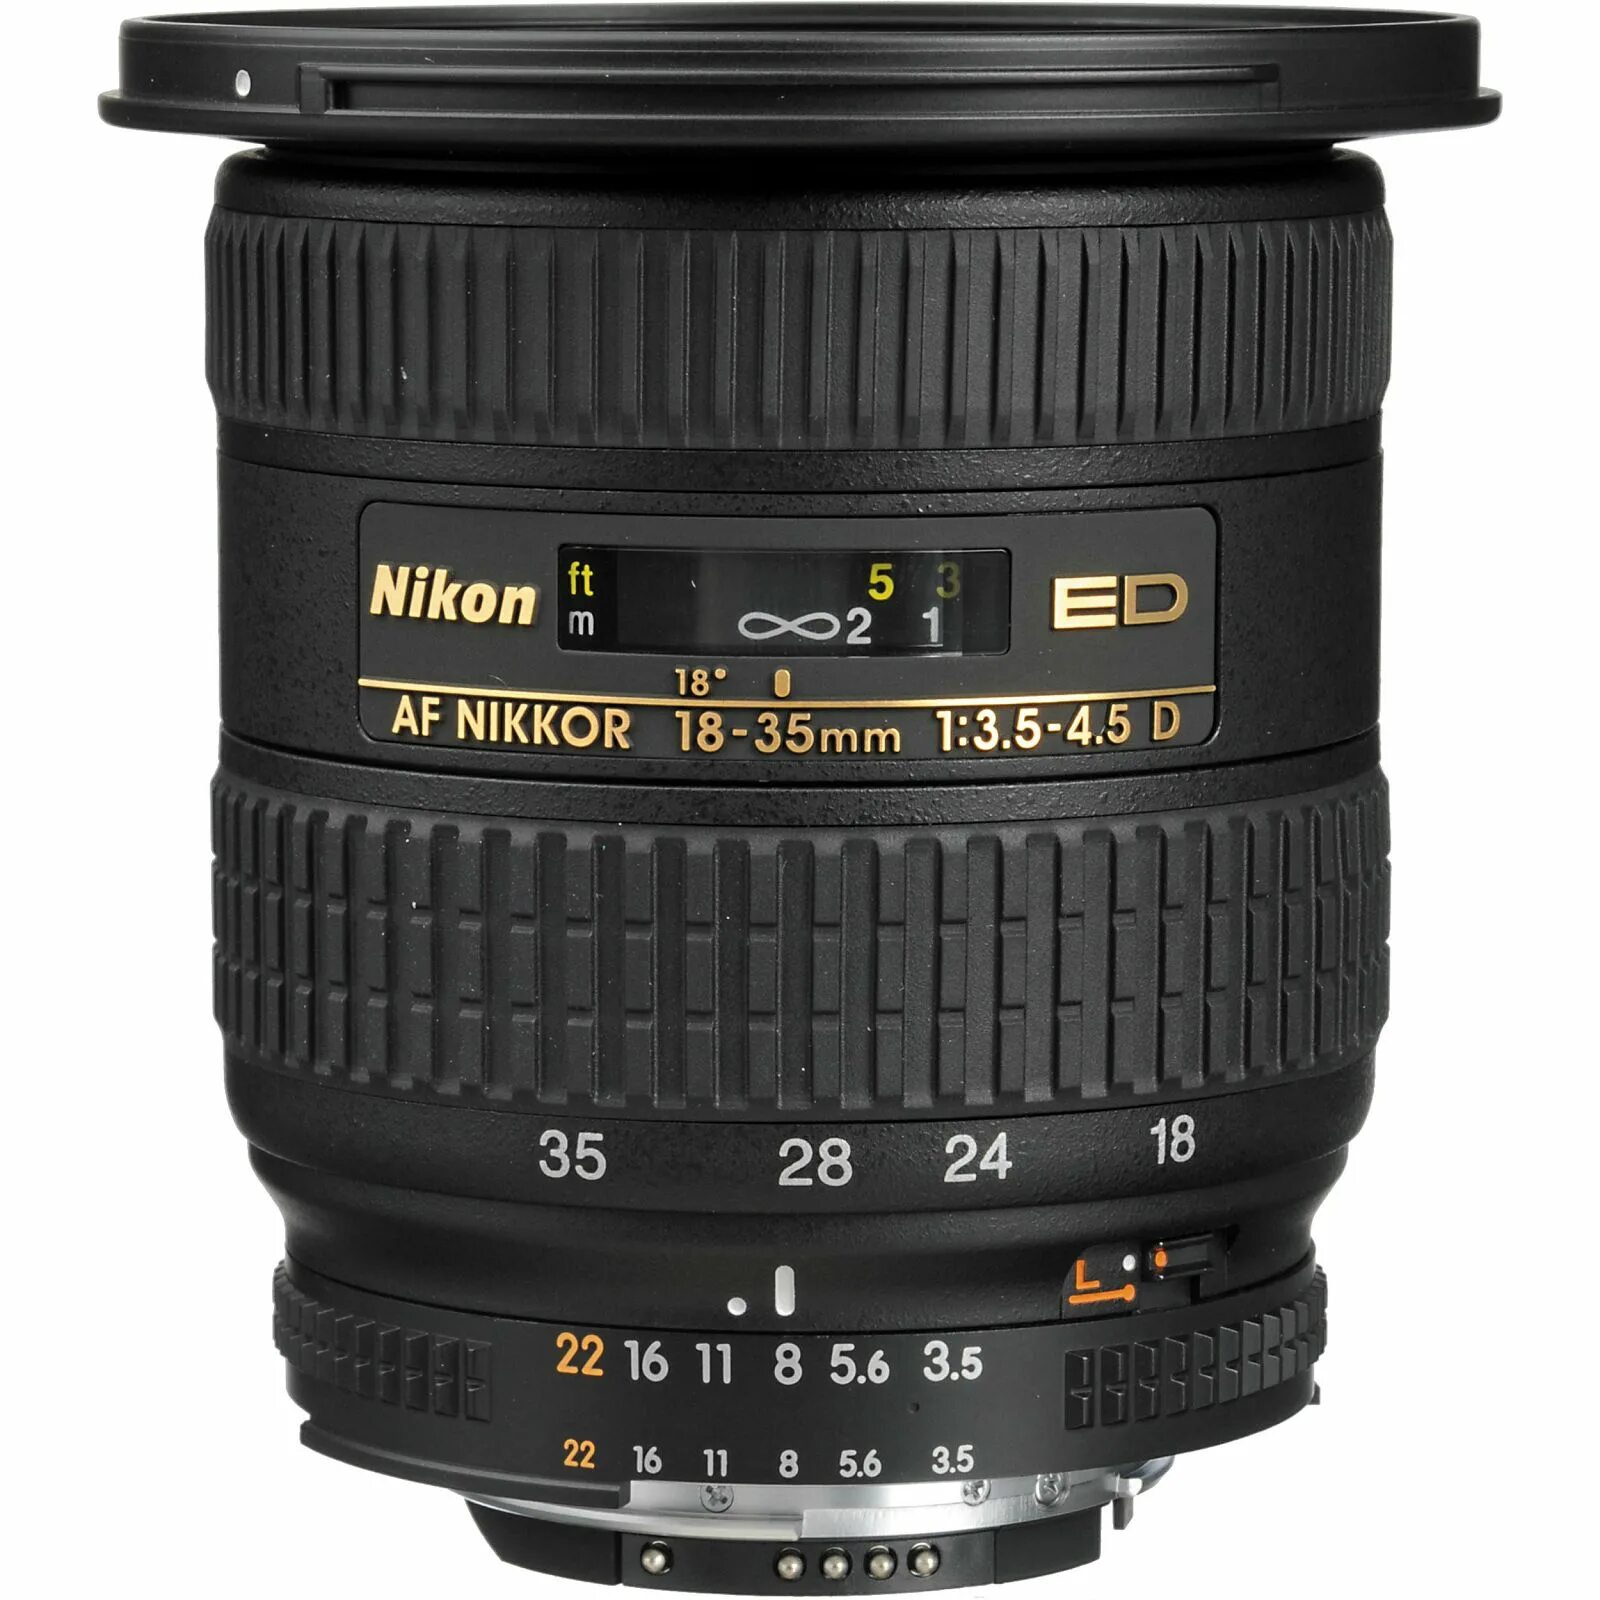 Nikon 18-35 f3.5-4.5 ed Nikkor. Nikon ed af Nikkor 18-35mm 3.5-4.5d. Nikon 18-35mm f/3.5-4.5g ed af-s Nikkor. Nikkor 35mm f/3.5 4.5d. Nikkor af s 35mm f 1.8